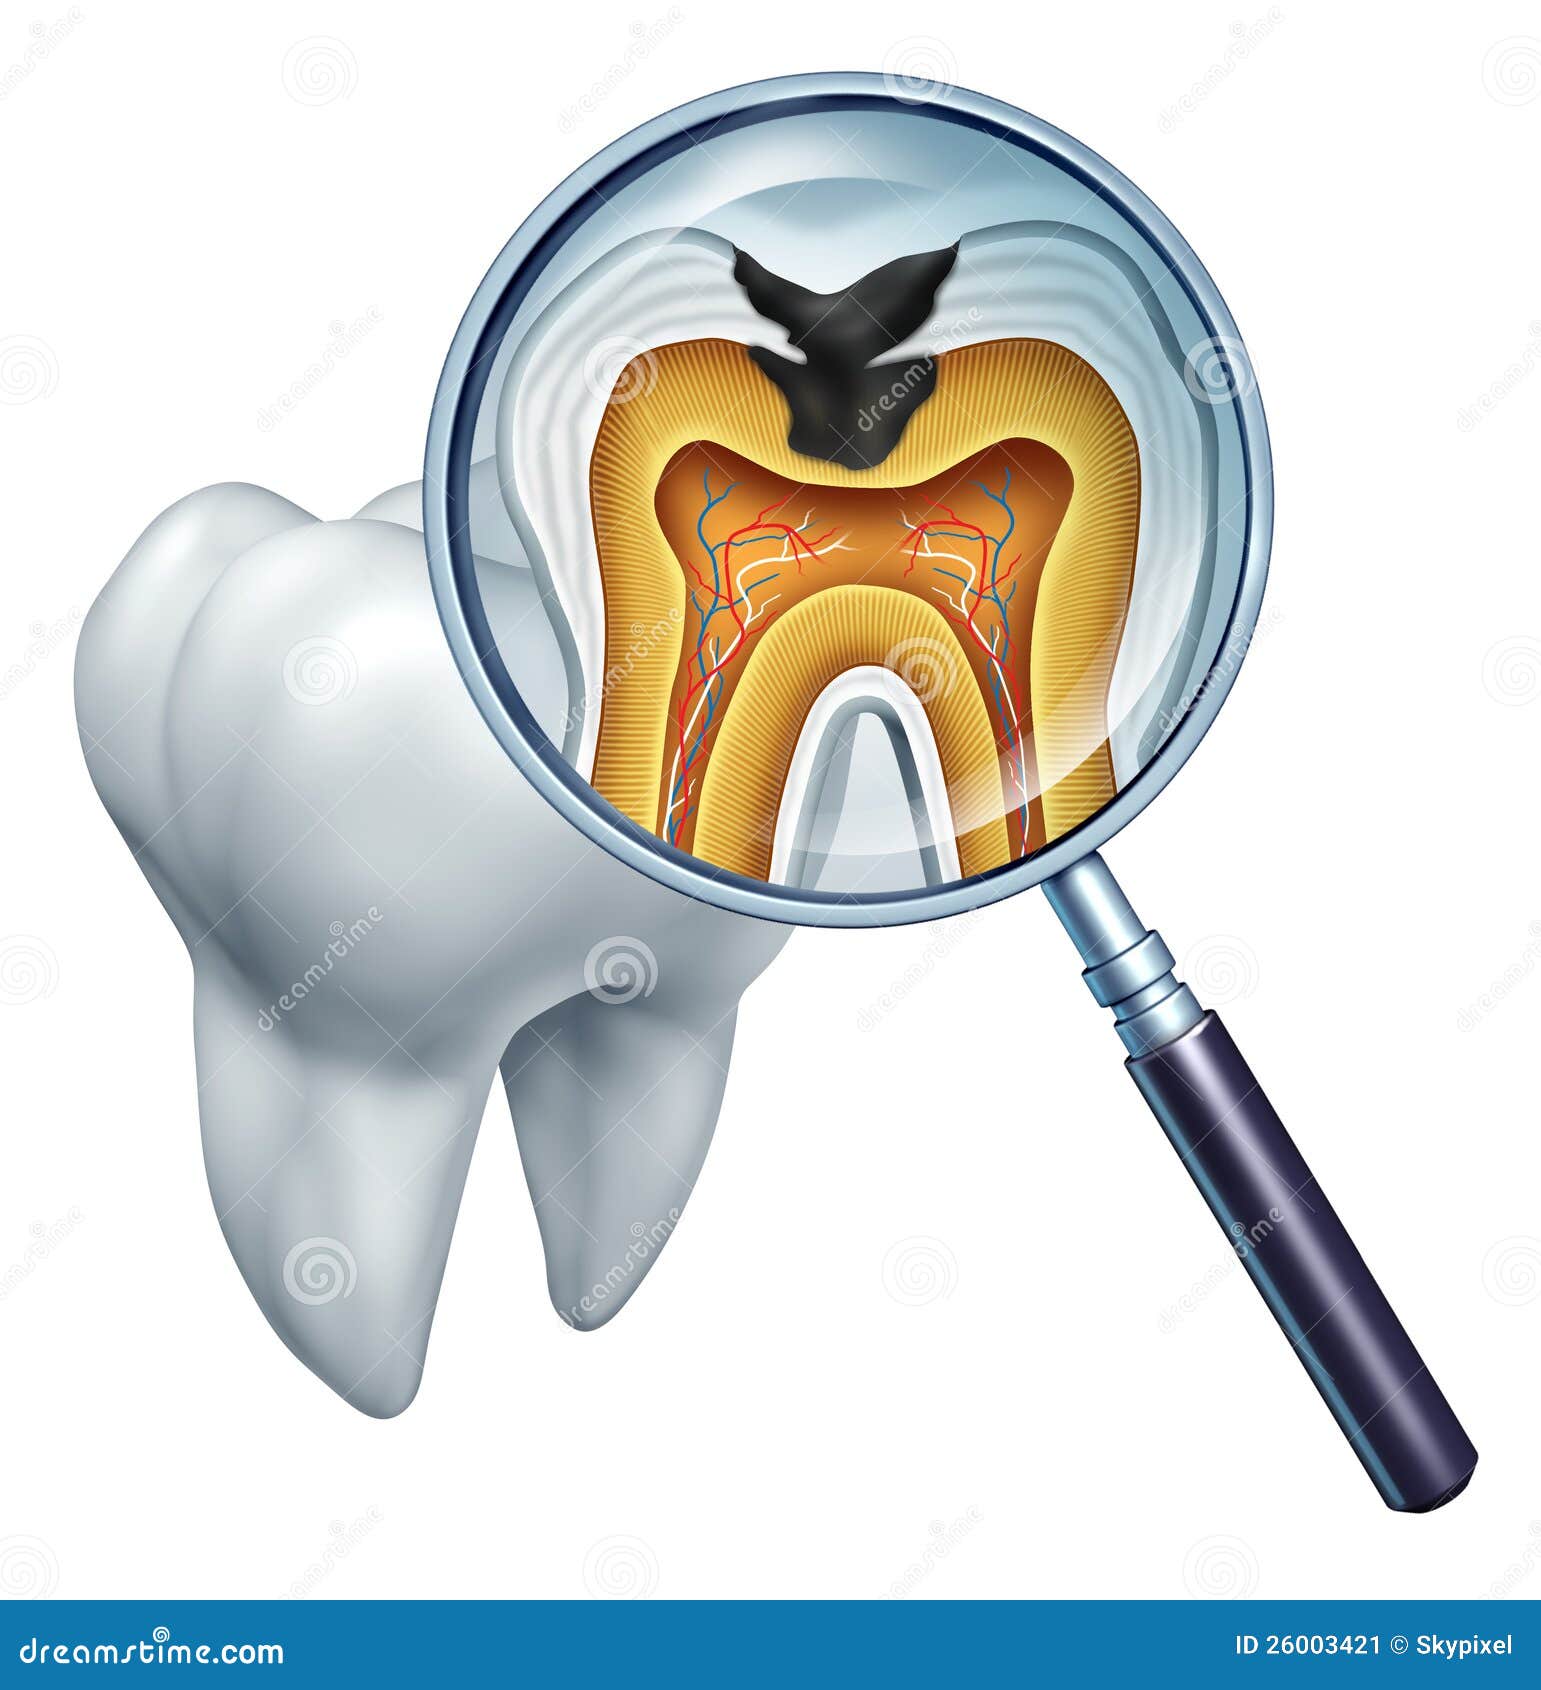 tooth cavity close up